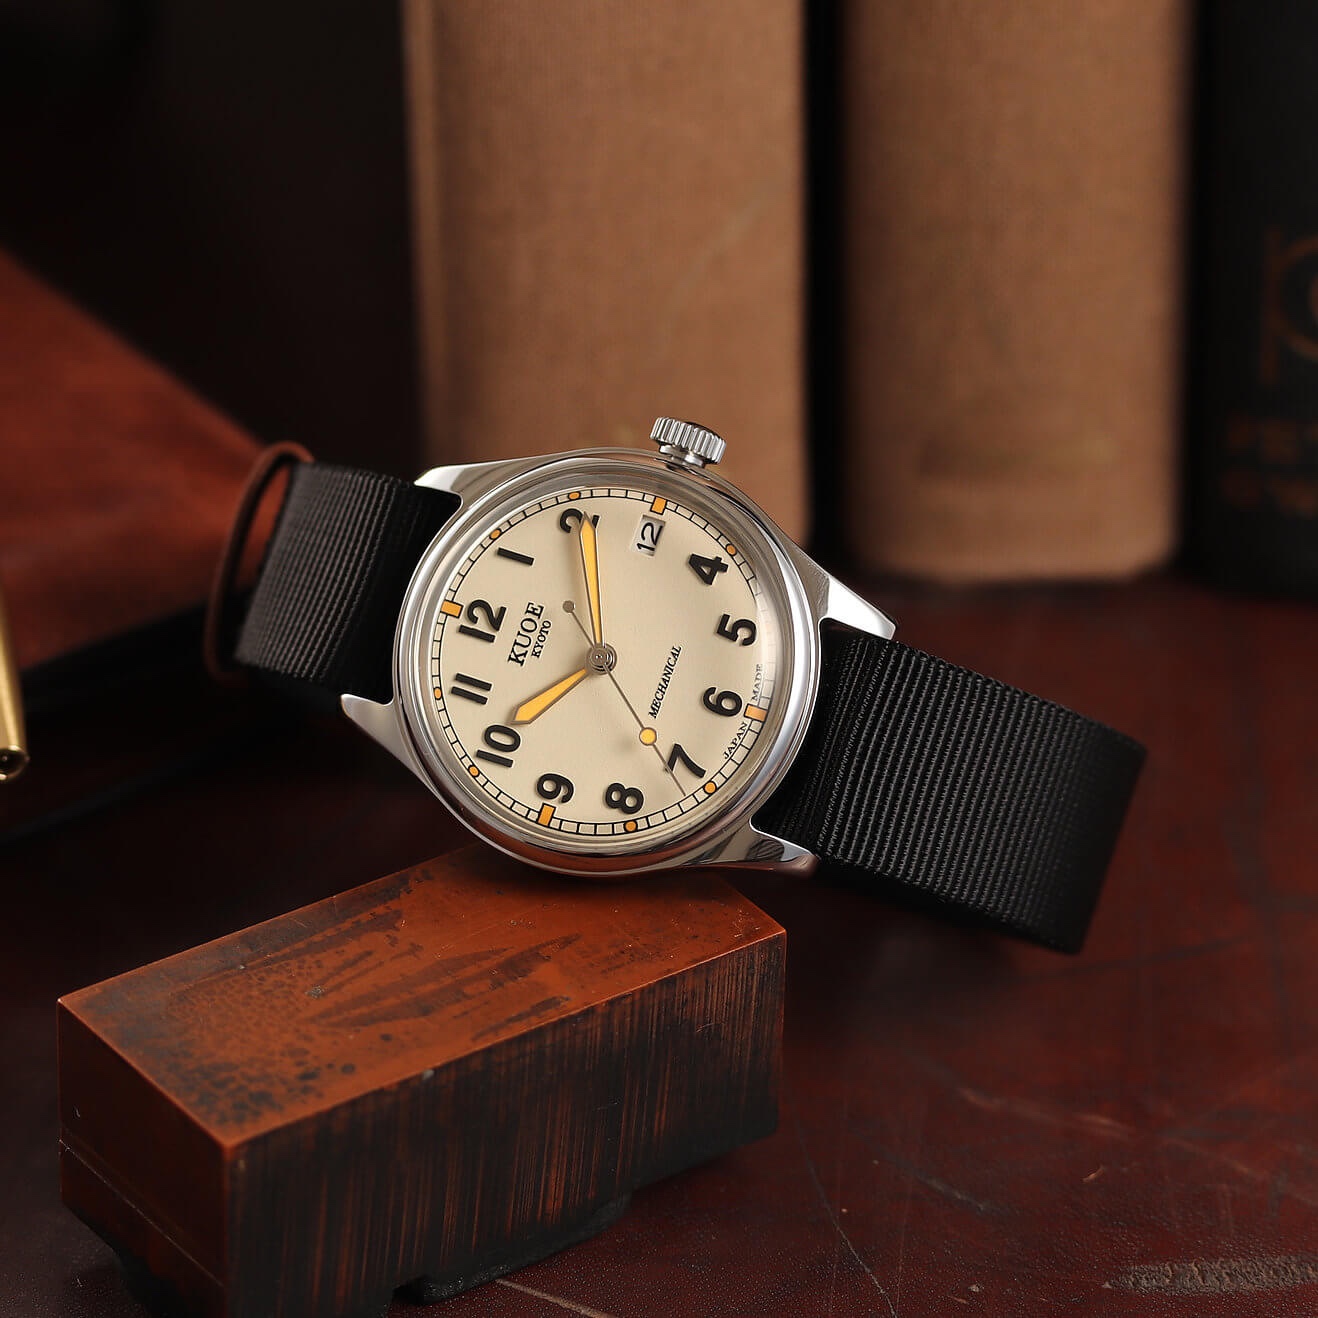 【京都発】日本製の腕時計ブランドKUOE(クオ)が話題に | カズブログ